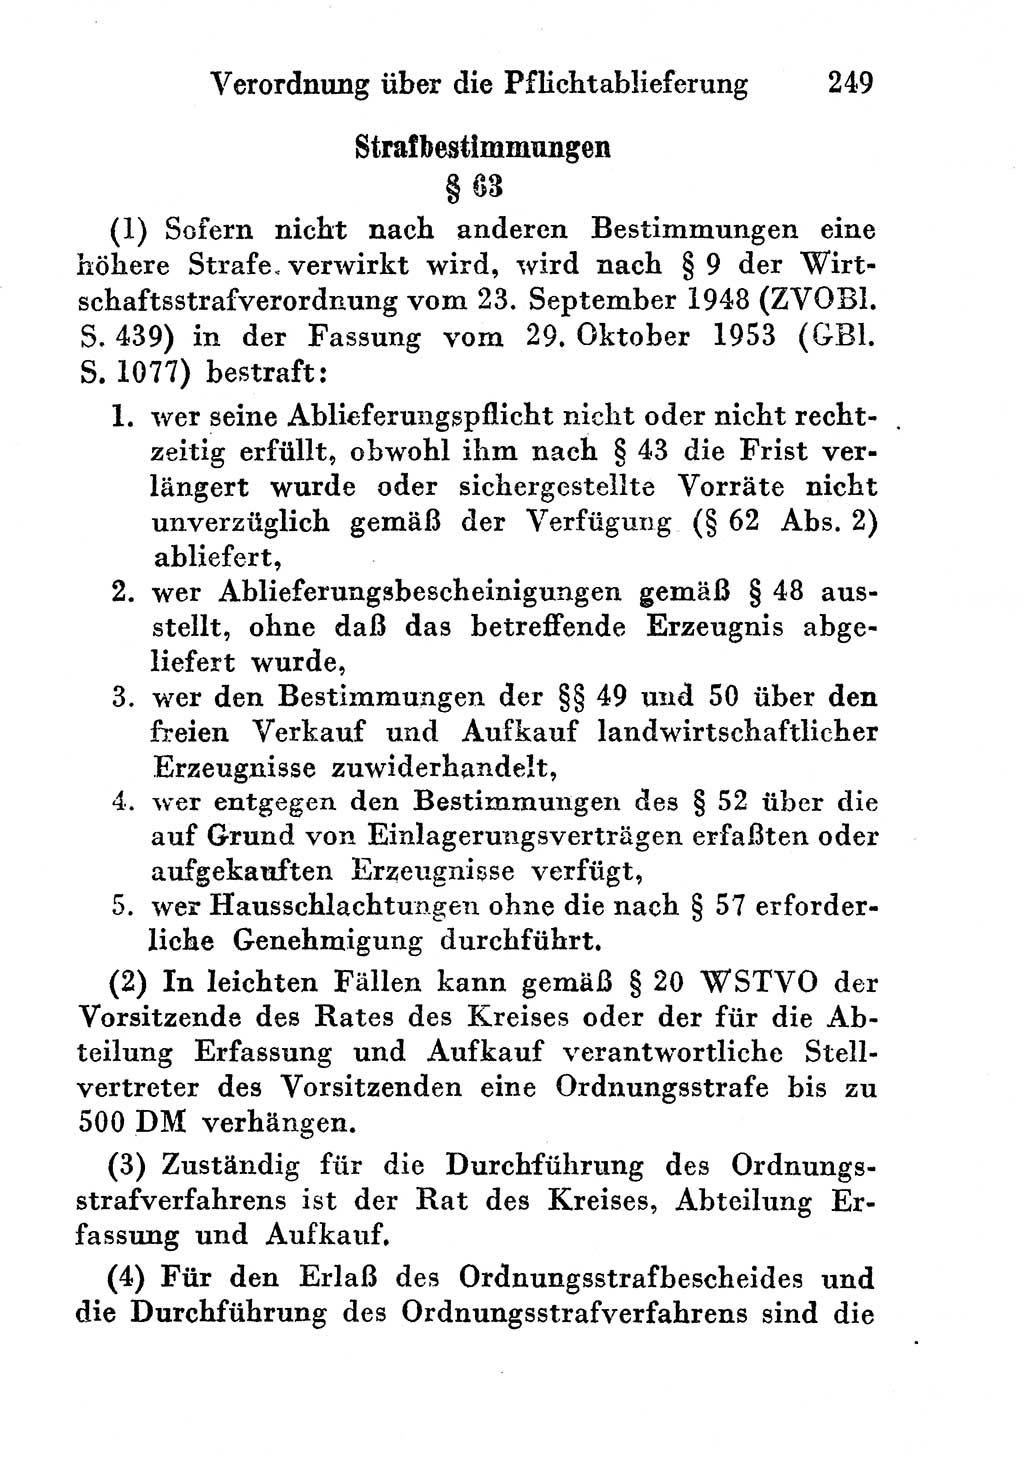 Strafgesetzbuch (StGB) und andere Strafgesetze [Deutsche Demokratische Republik (DDR)] 1956, Seite 249 (StGB Strafges. DDR 1956, S. 249)